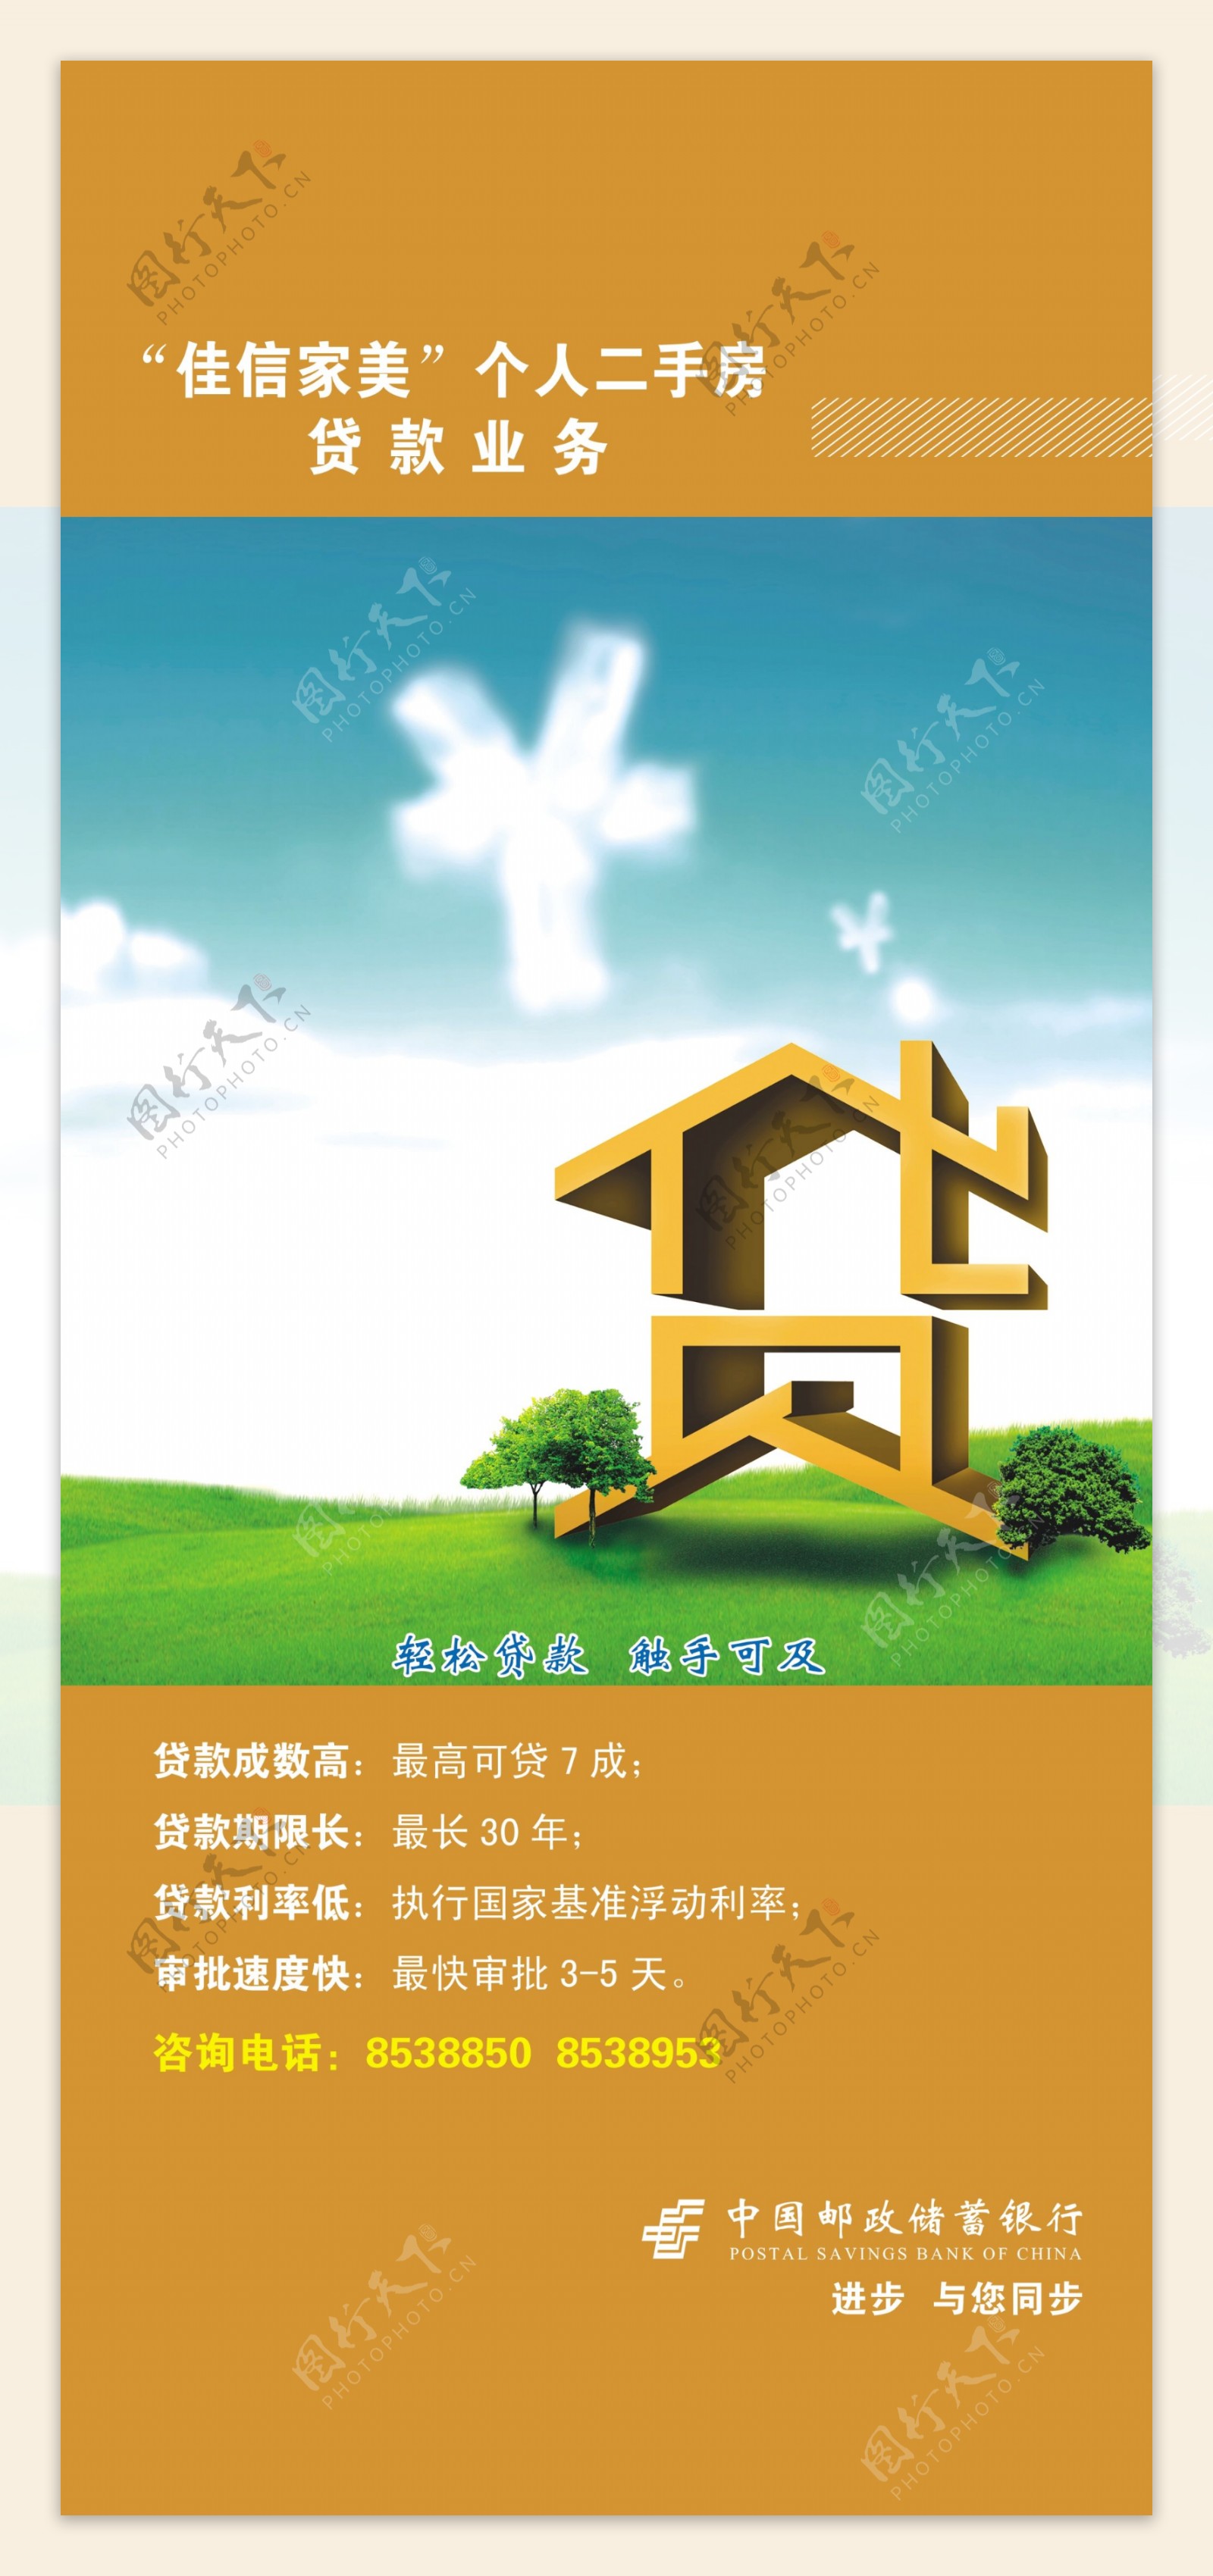 中国邮政储蓄贷款业务展架图片